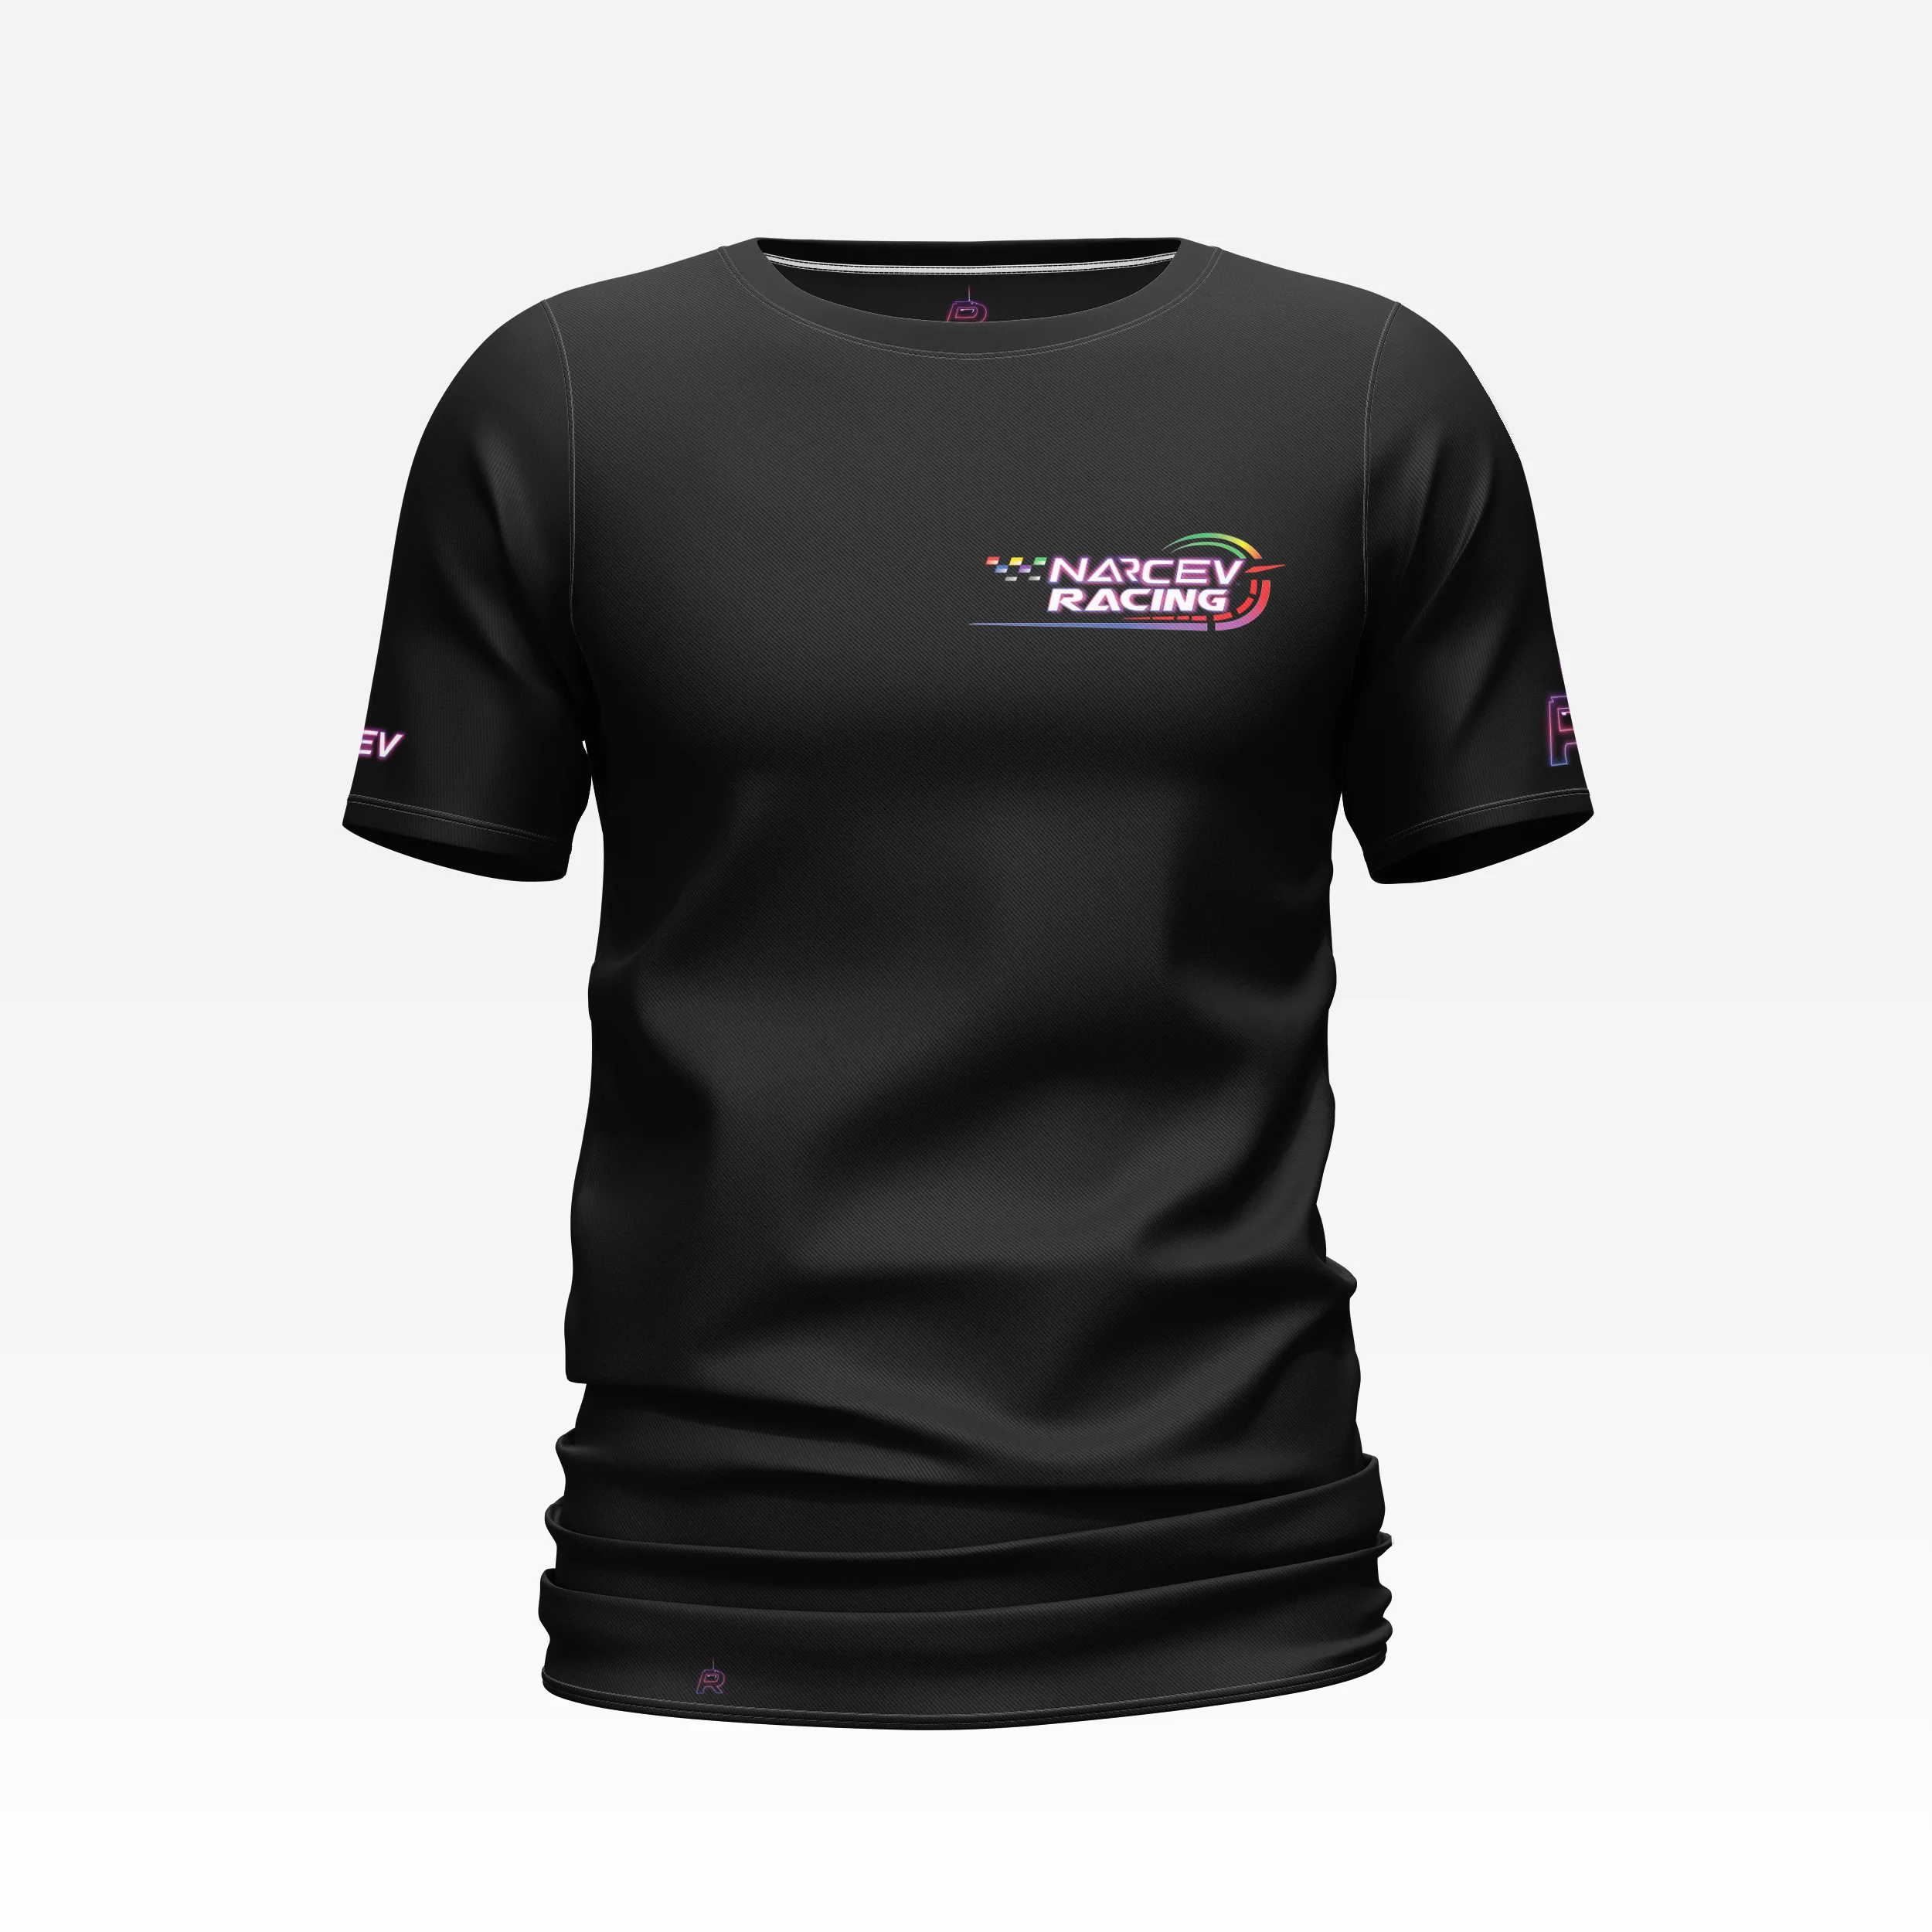 Narcev_racing_t-shirt_black